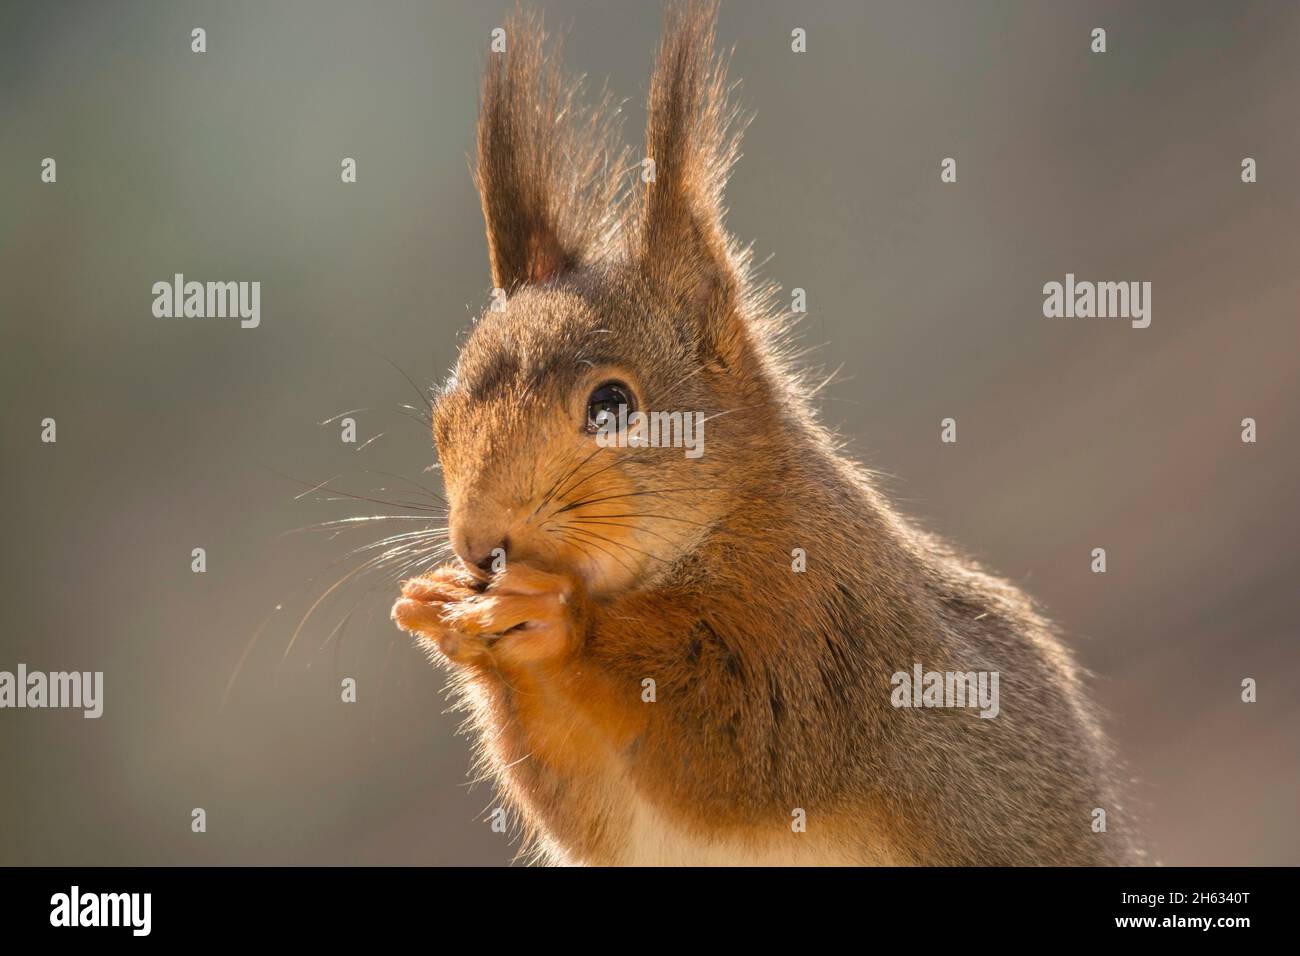 Nahaufnahme des roten Eichhörnchens, das die Hände für den Mund hält Stockfoto